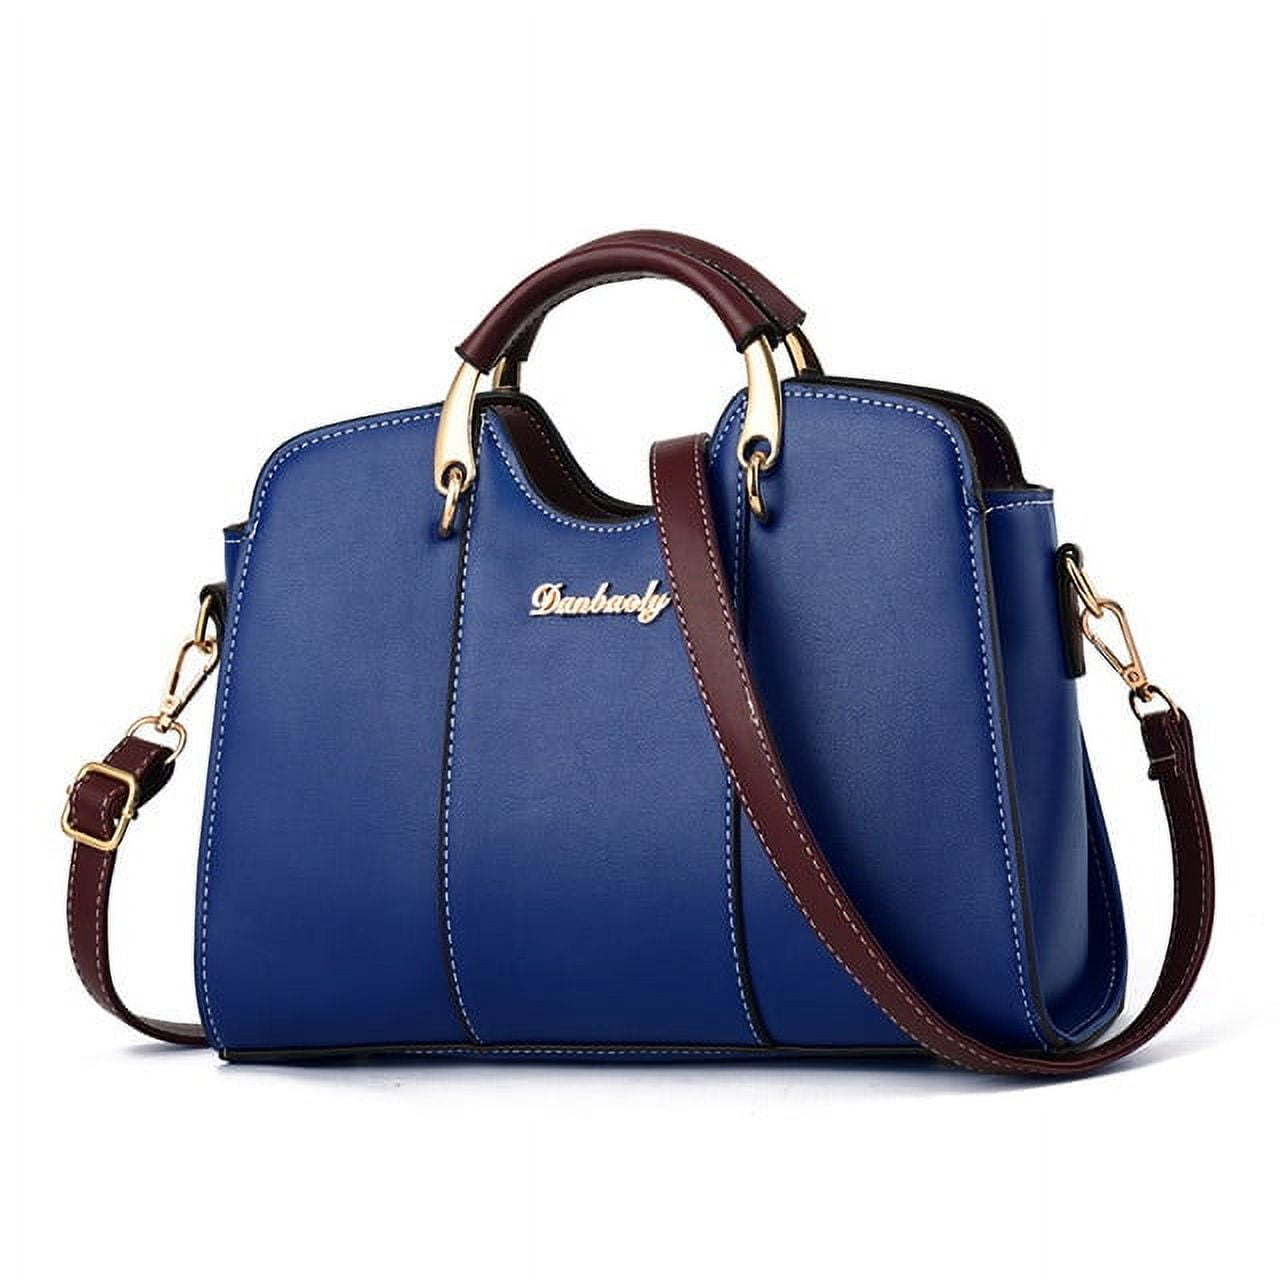 CoCopeaunt Fashion Round Handbag Vintage Shoulder Bag for Women